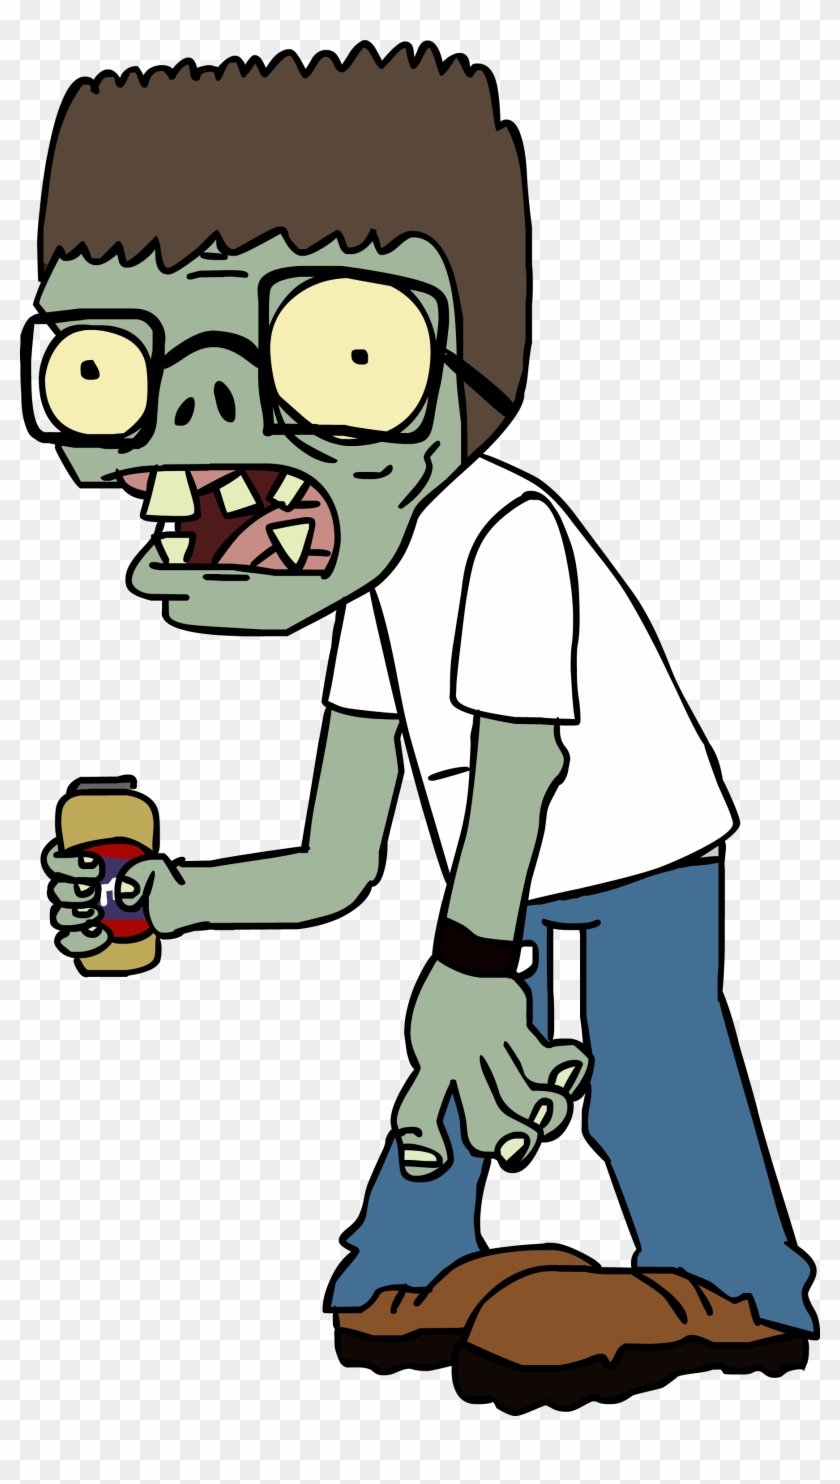 Hank Hill Zombie By Lolwutburger Hank Hill Zombie By - Zombie Hank Hill #406699